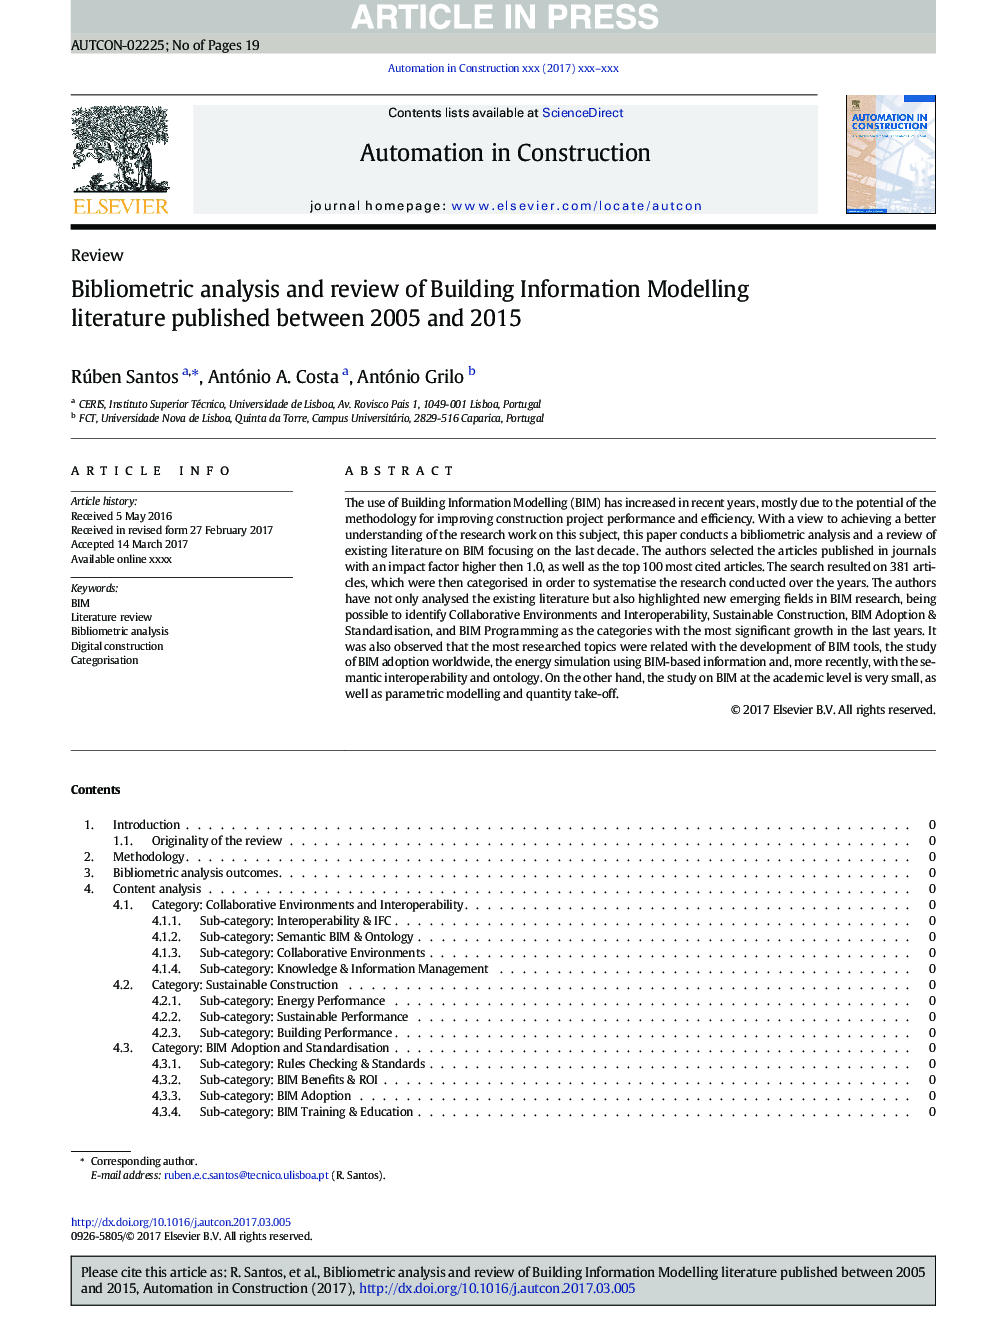 تجزیه و تحلیل و بررسی کتابشناختی ادبیات مدل سازی ساختمان اطلاعات بین سال های 2005 تا 2015 منتشر شده است 